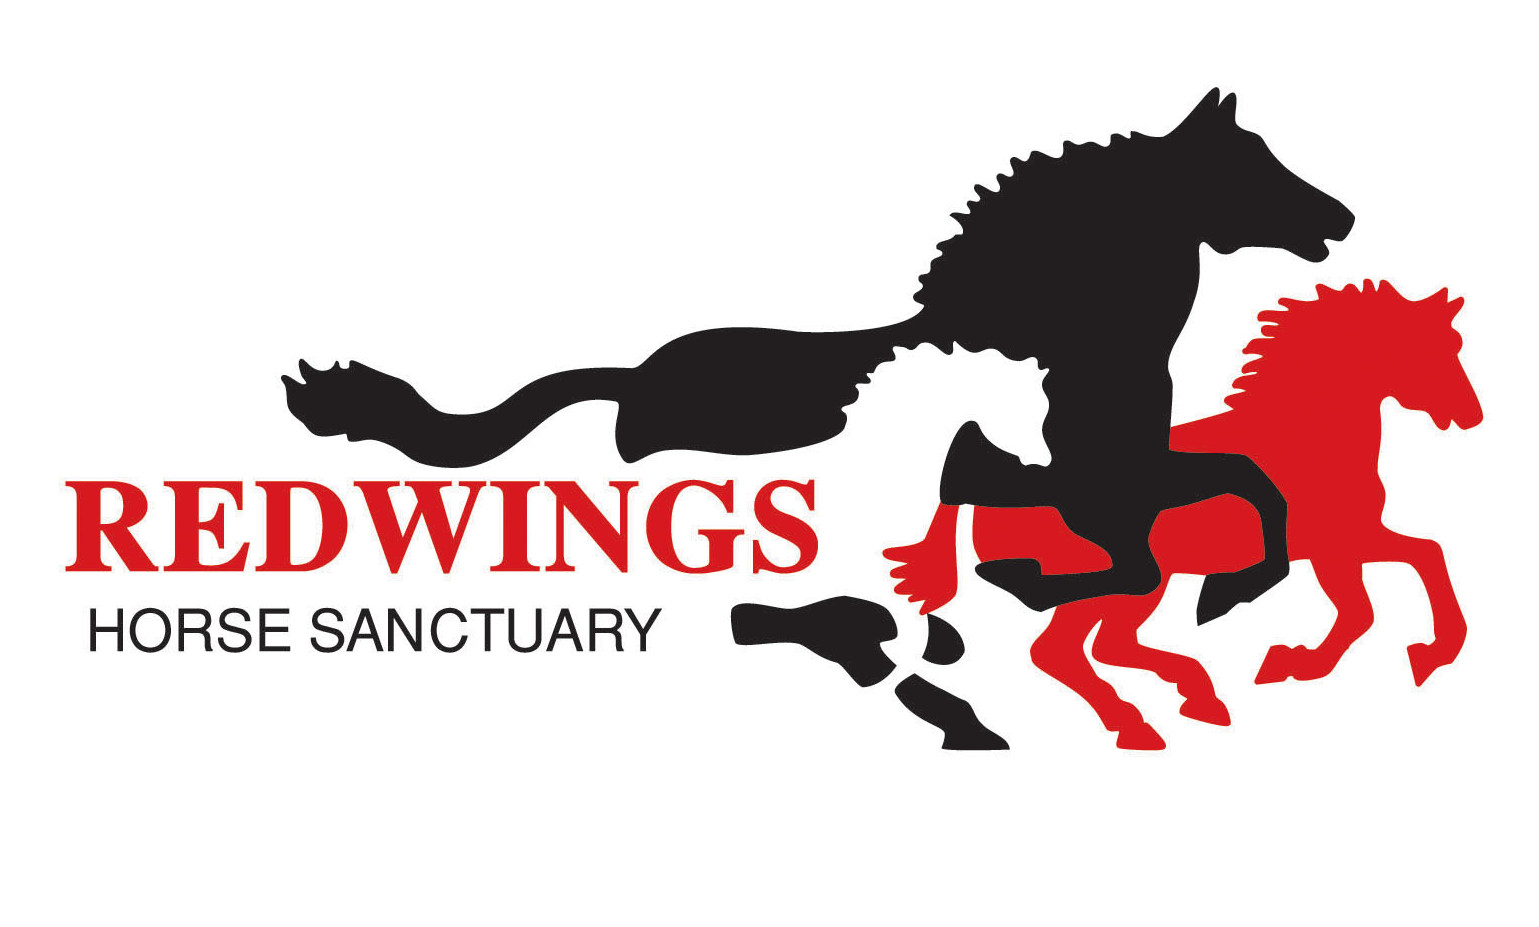 Redwings Horse Sanctuary's logo